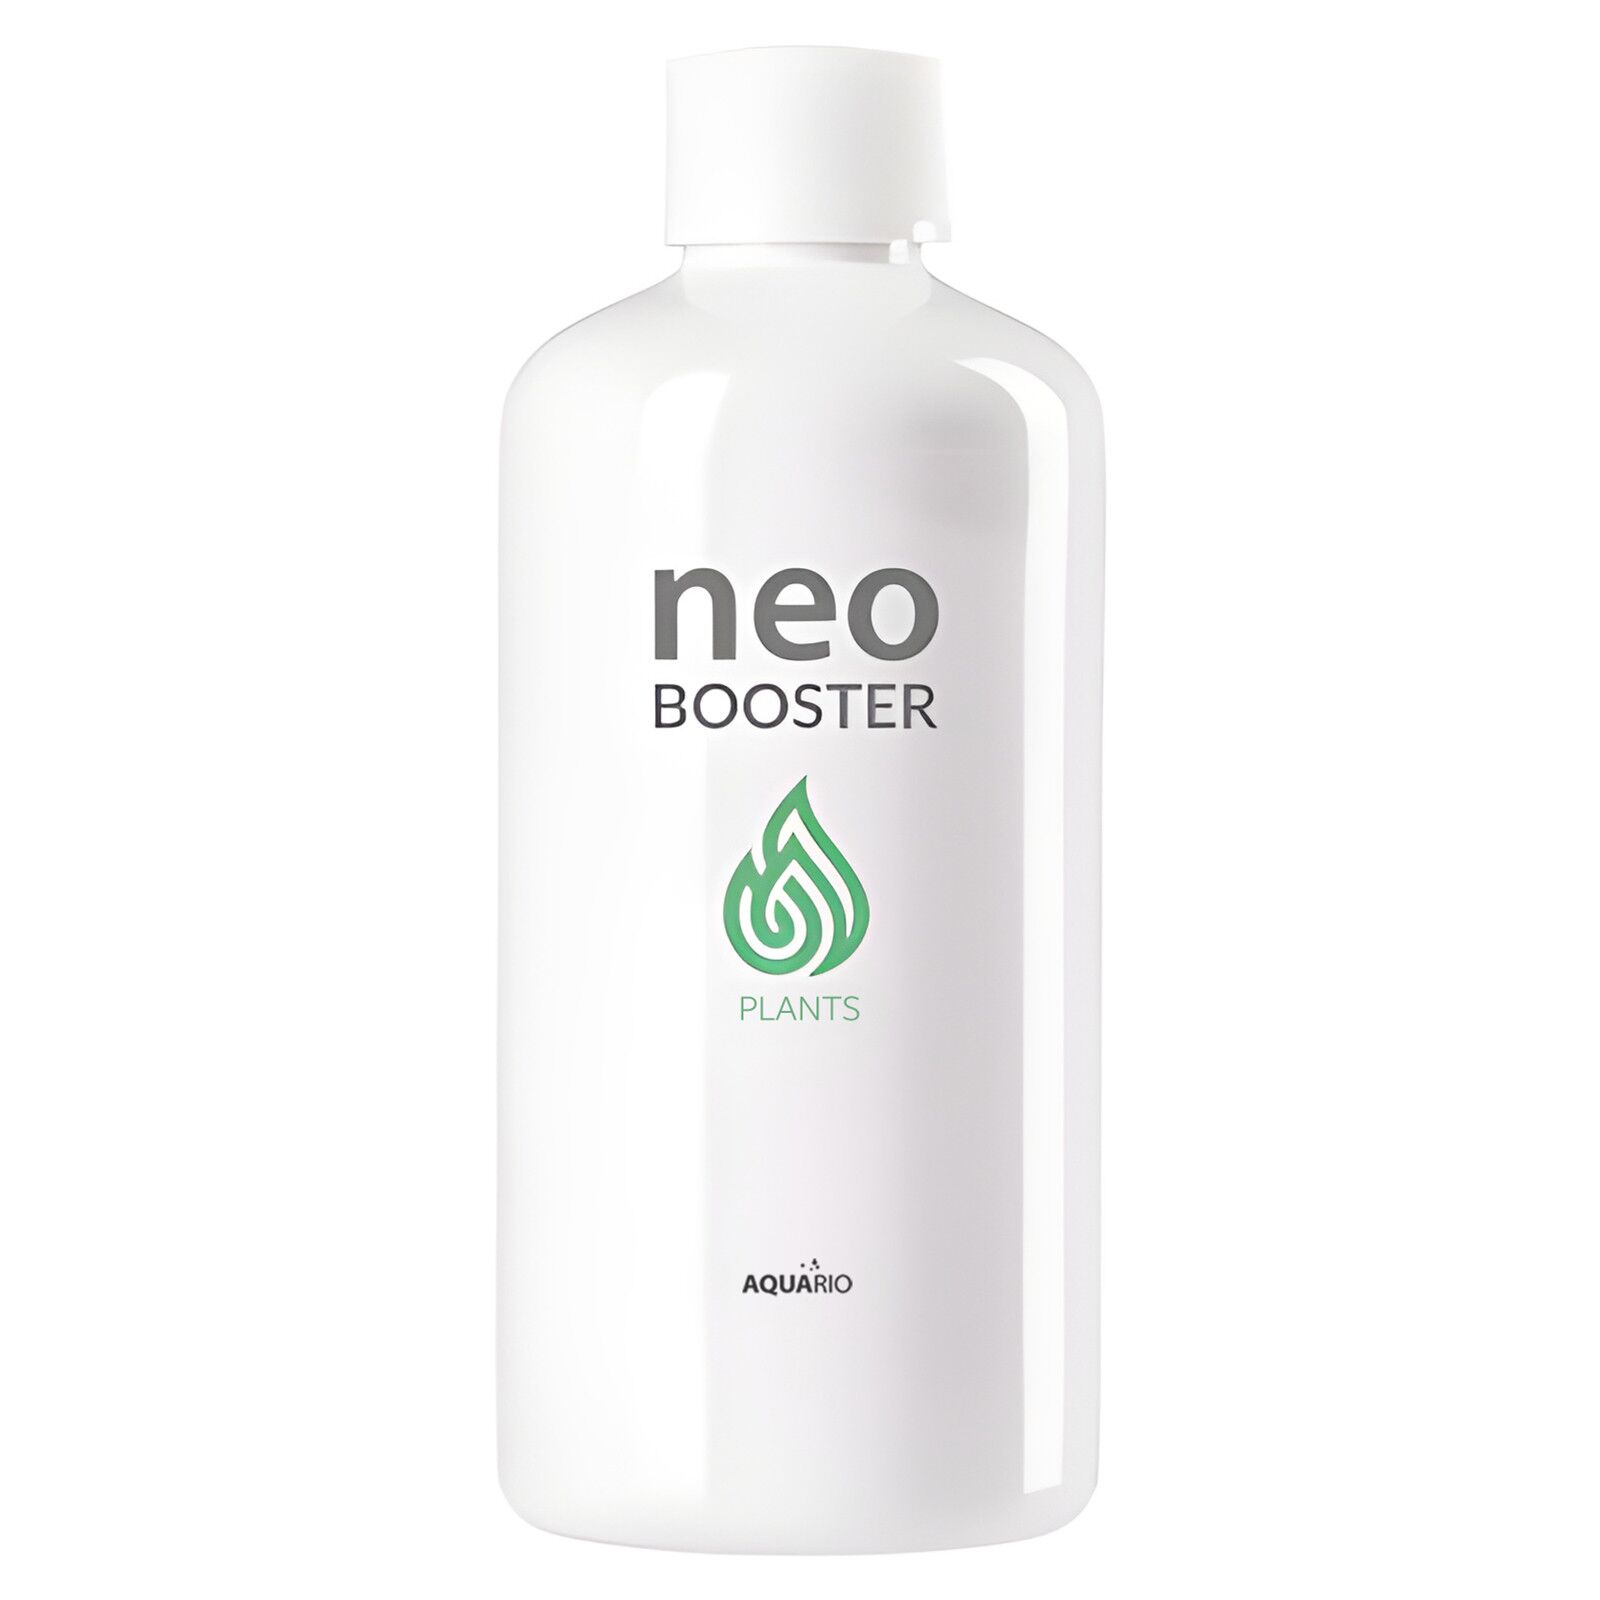 AQUARIO - Neo Booster Plants - Water Conditioner